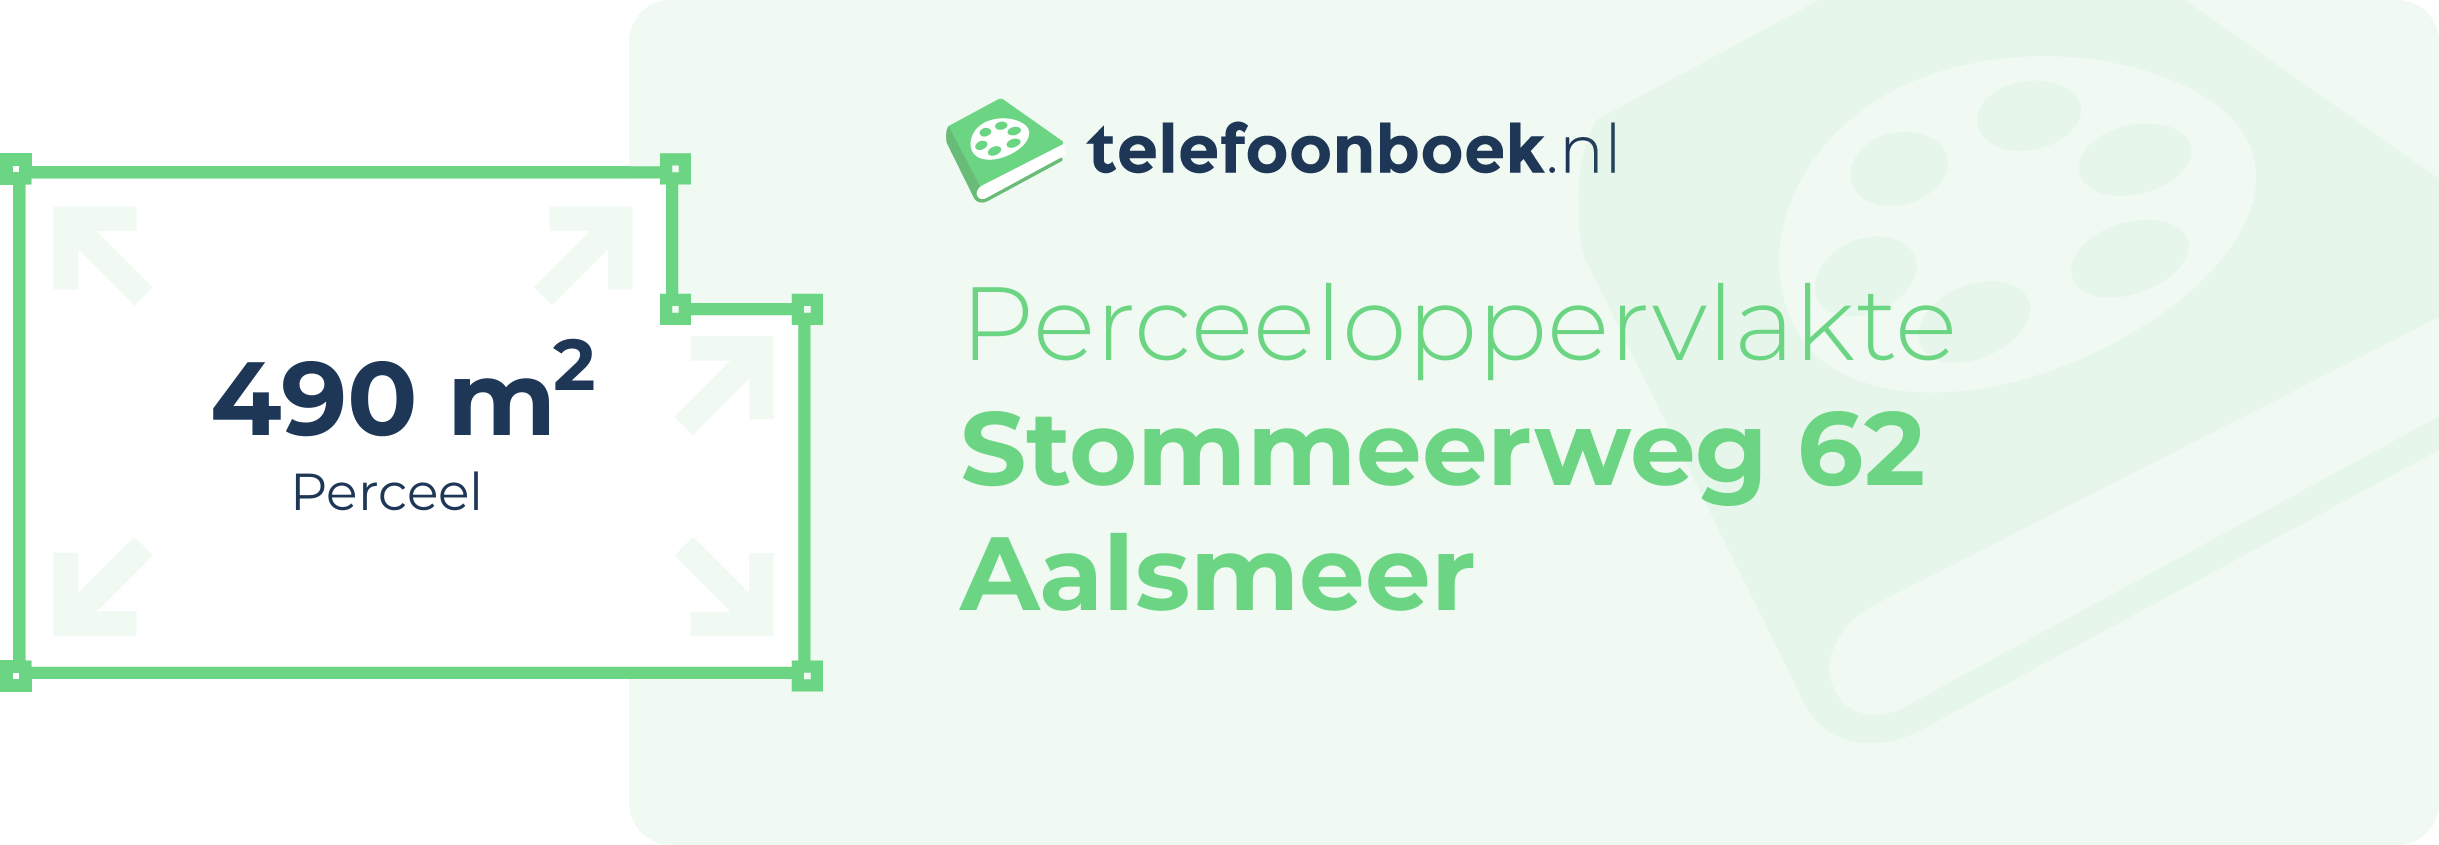 Perceeloppervlakte Stommeerweg 62 Aalsmeer